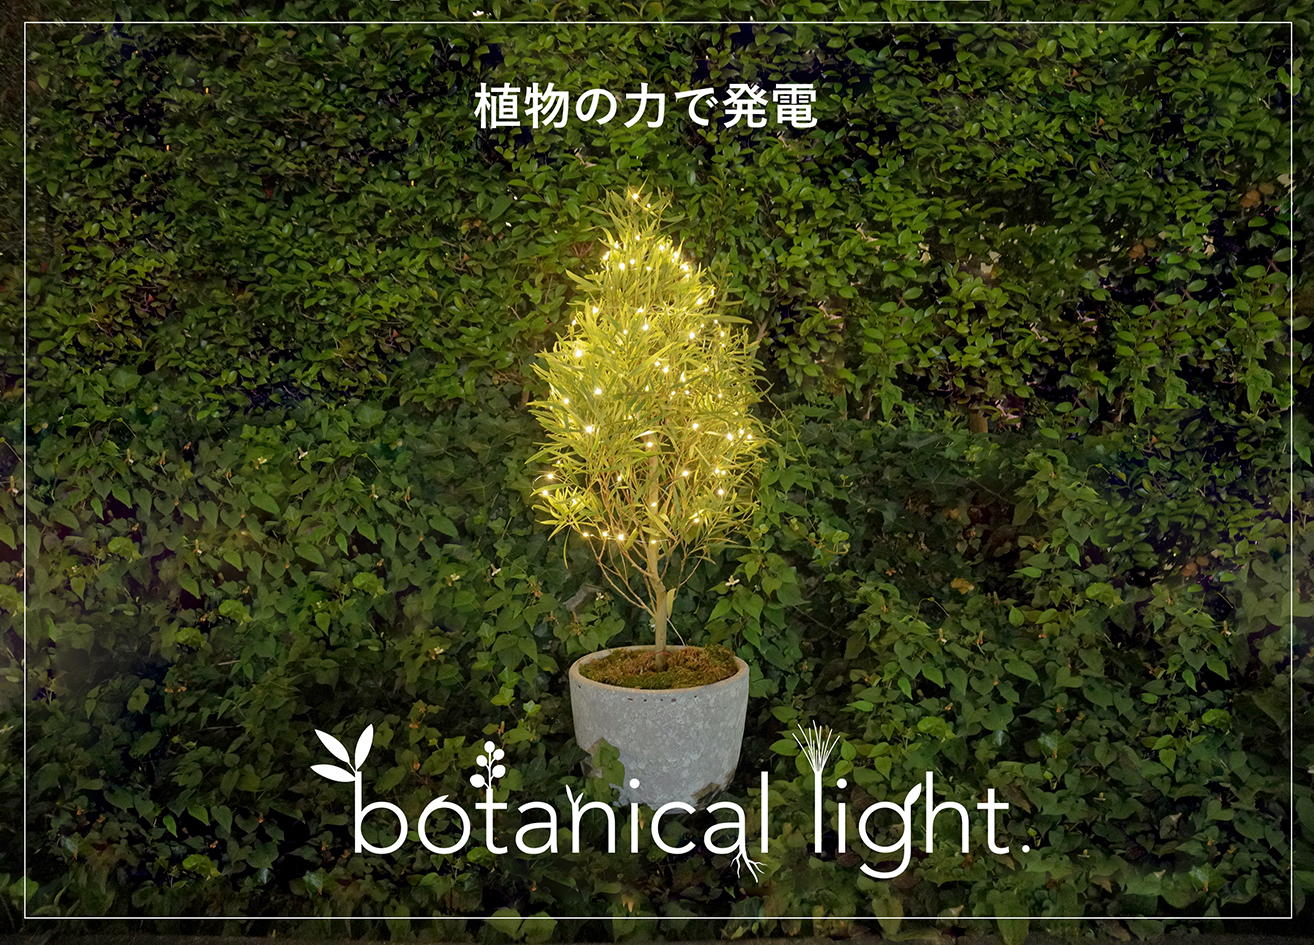 botanical light（ボタニカルライト）